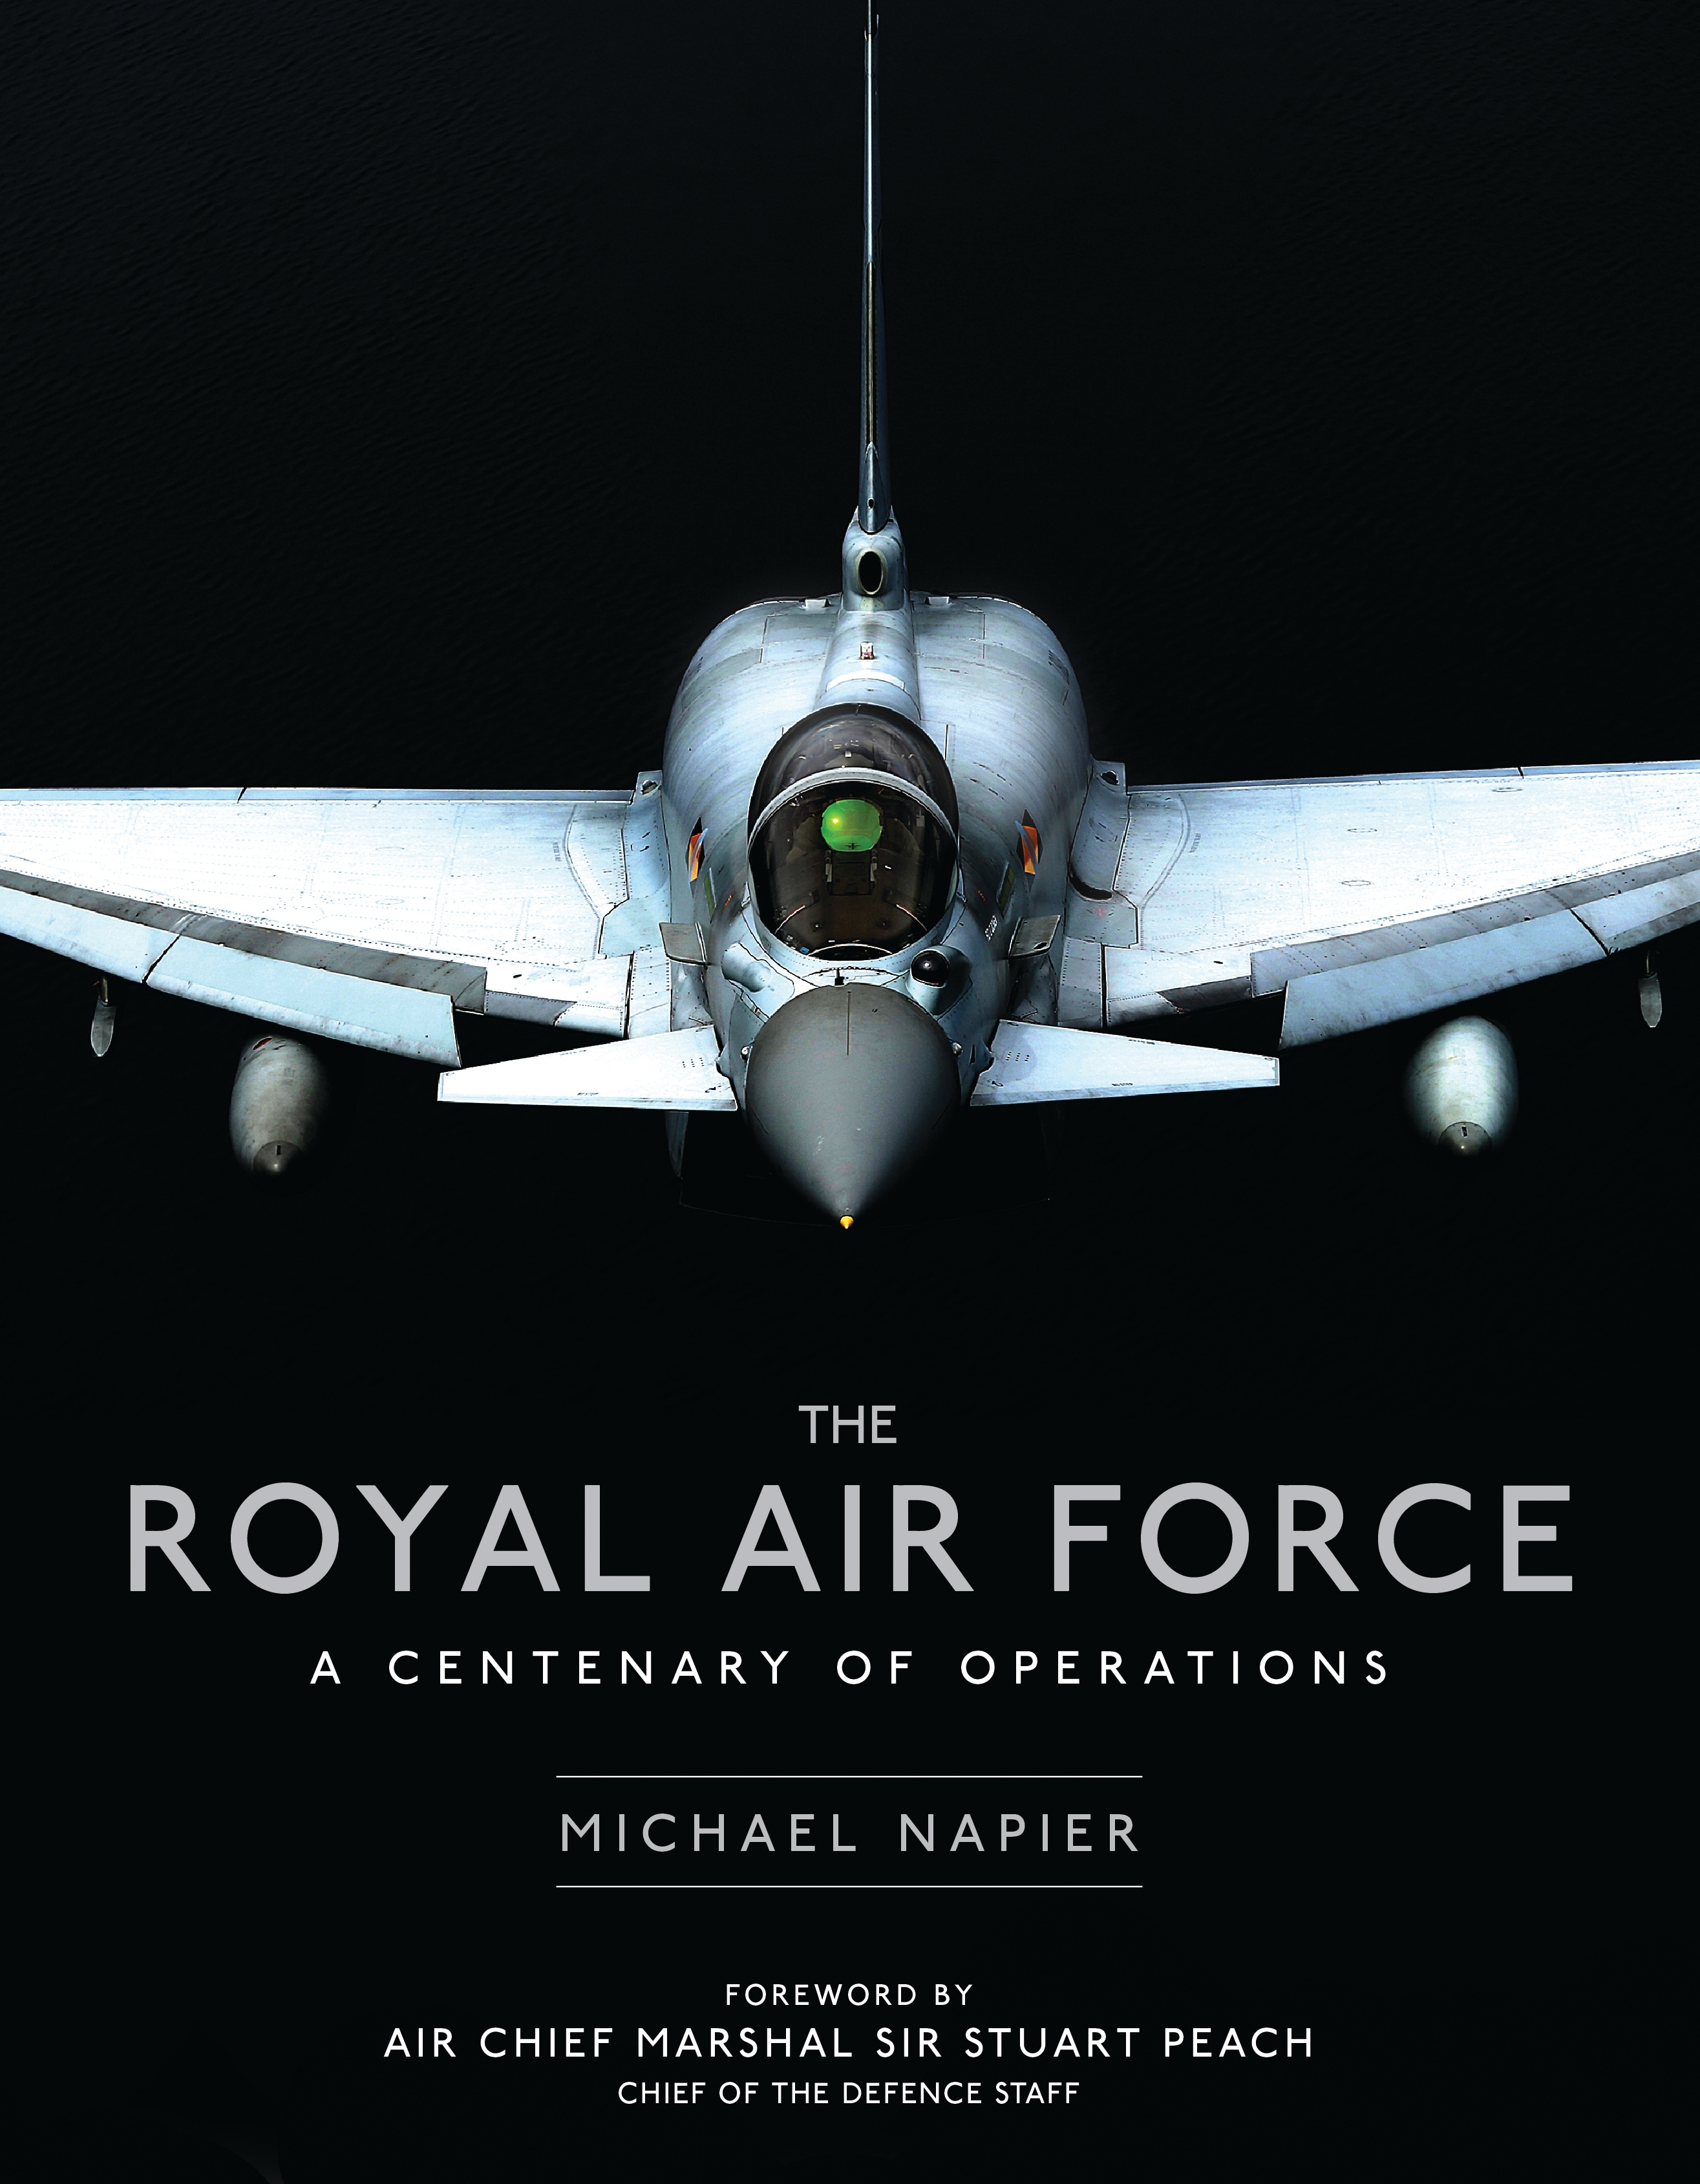 The RAF book